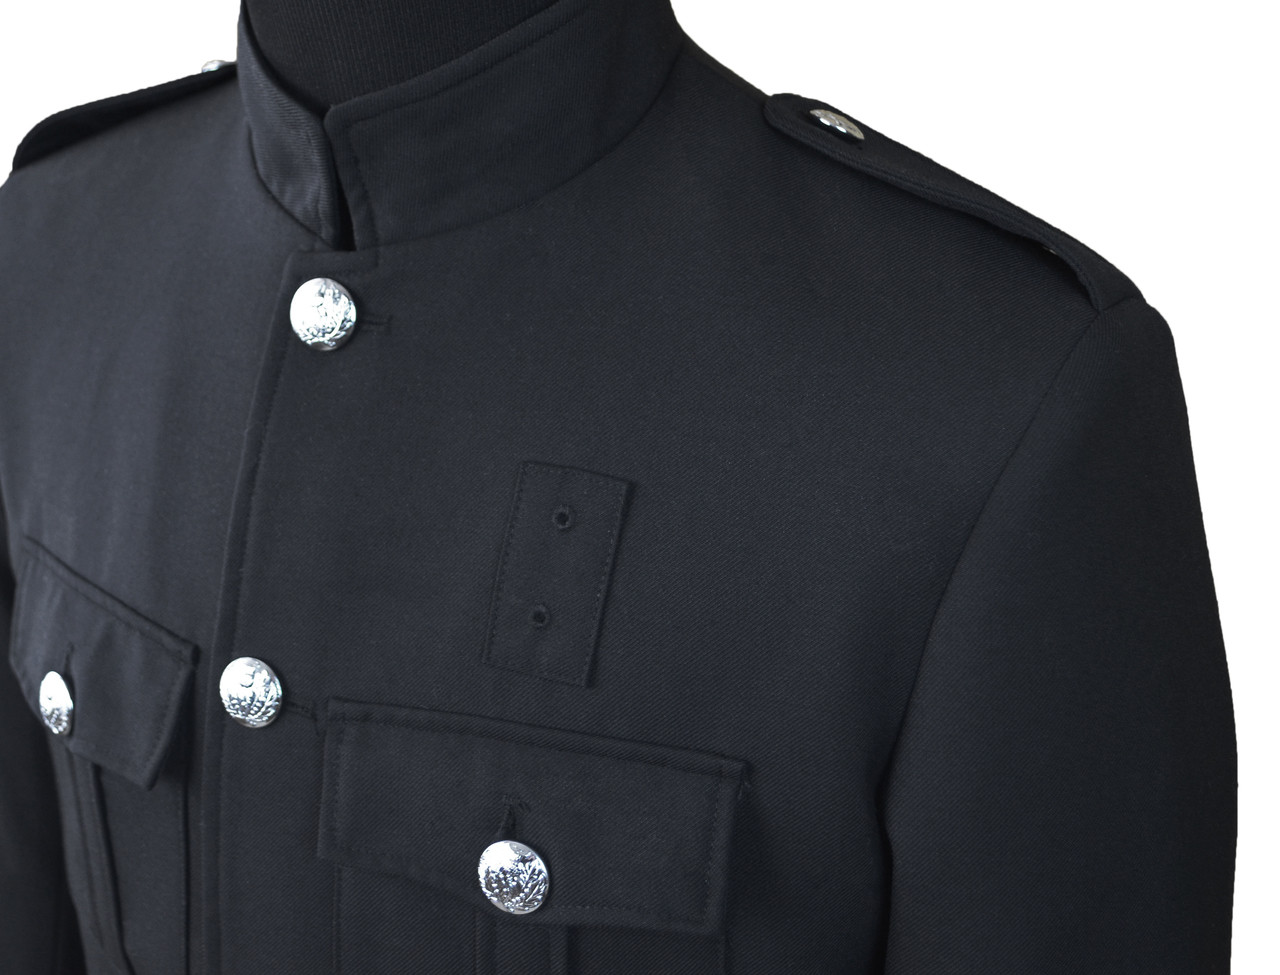 Black Police Honor Guard Jacket | J. Higgins, Ltd.